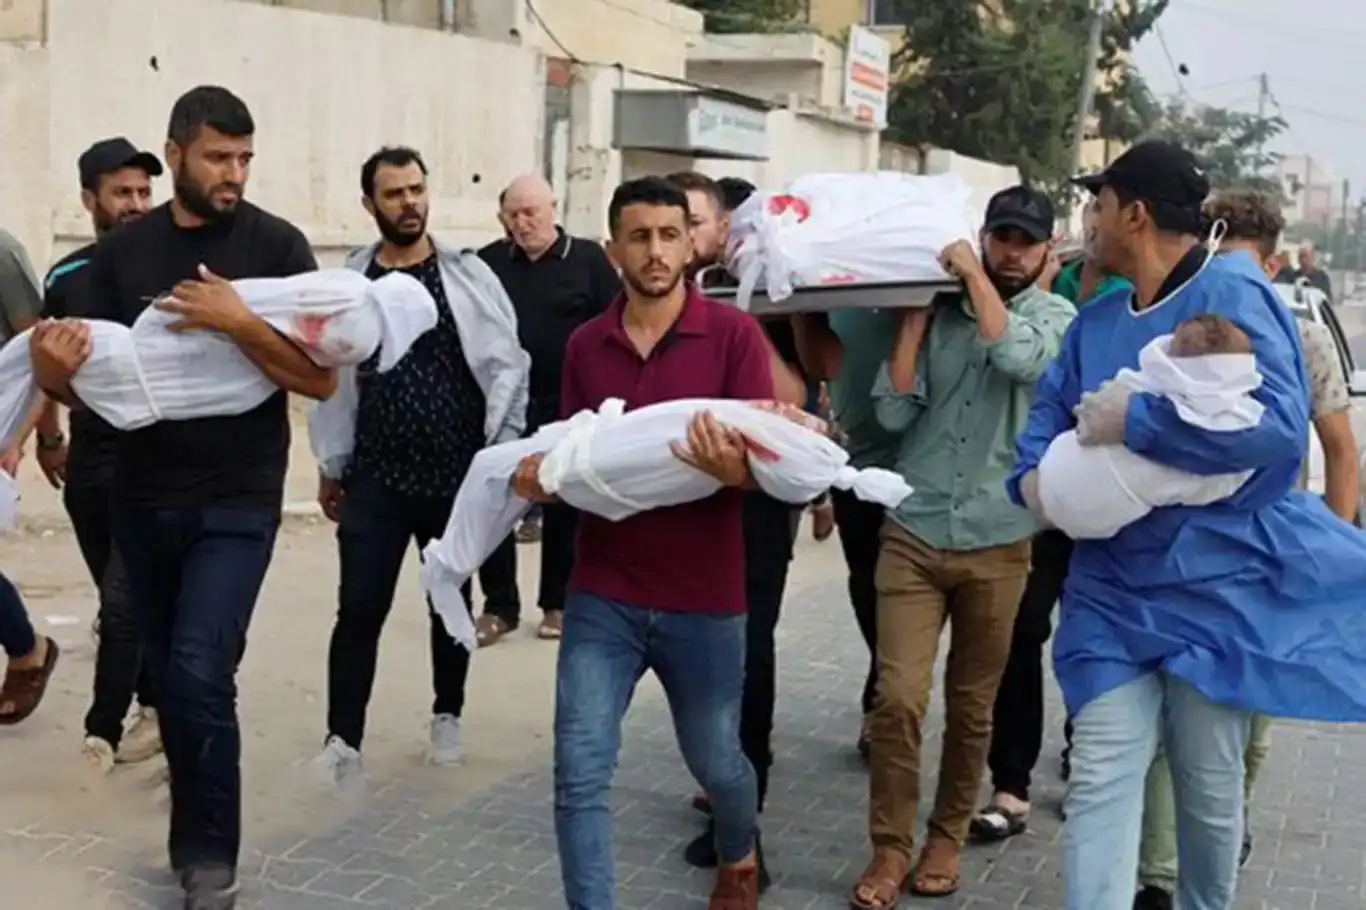 UNICEF: Gazze’de 13 binden fazla çocuk öldürüldü